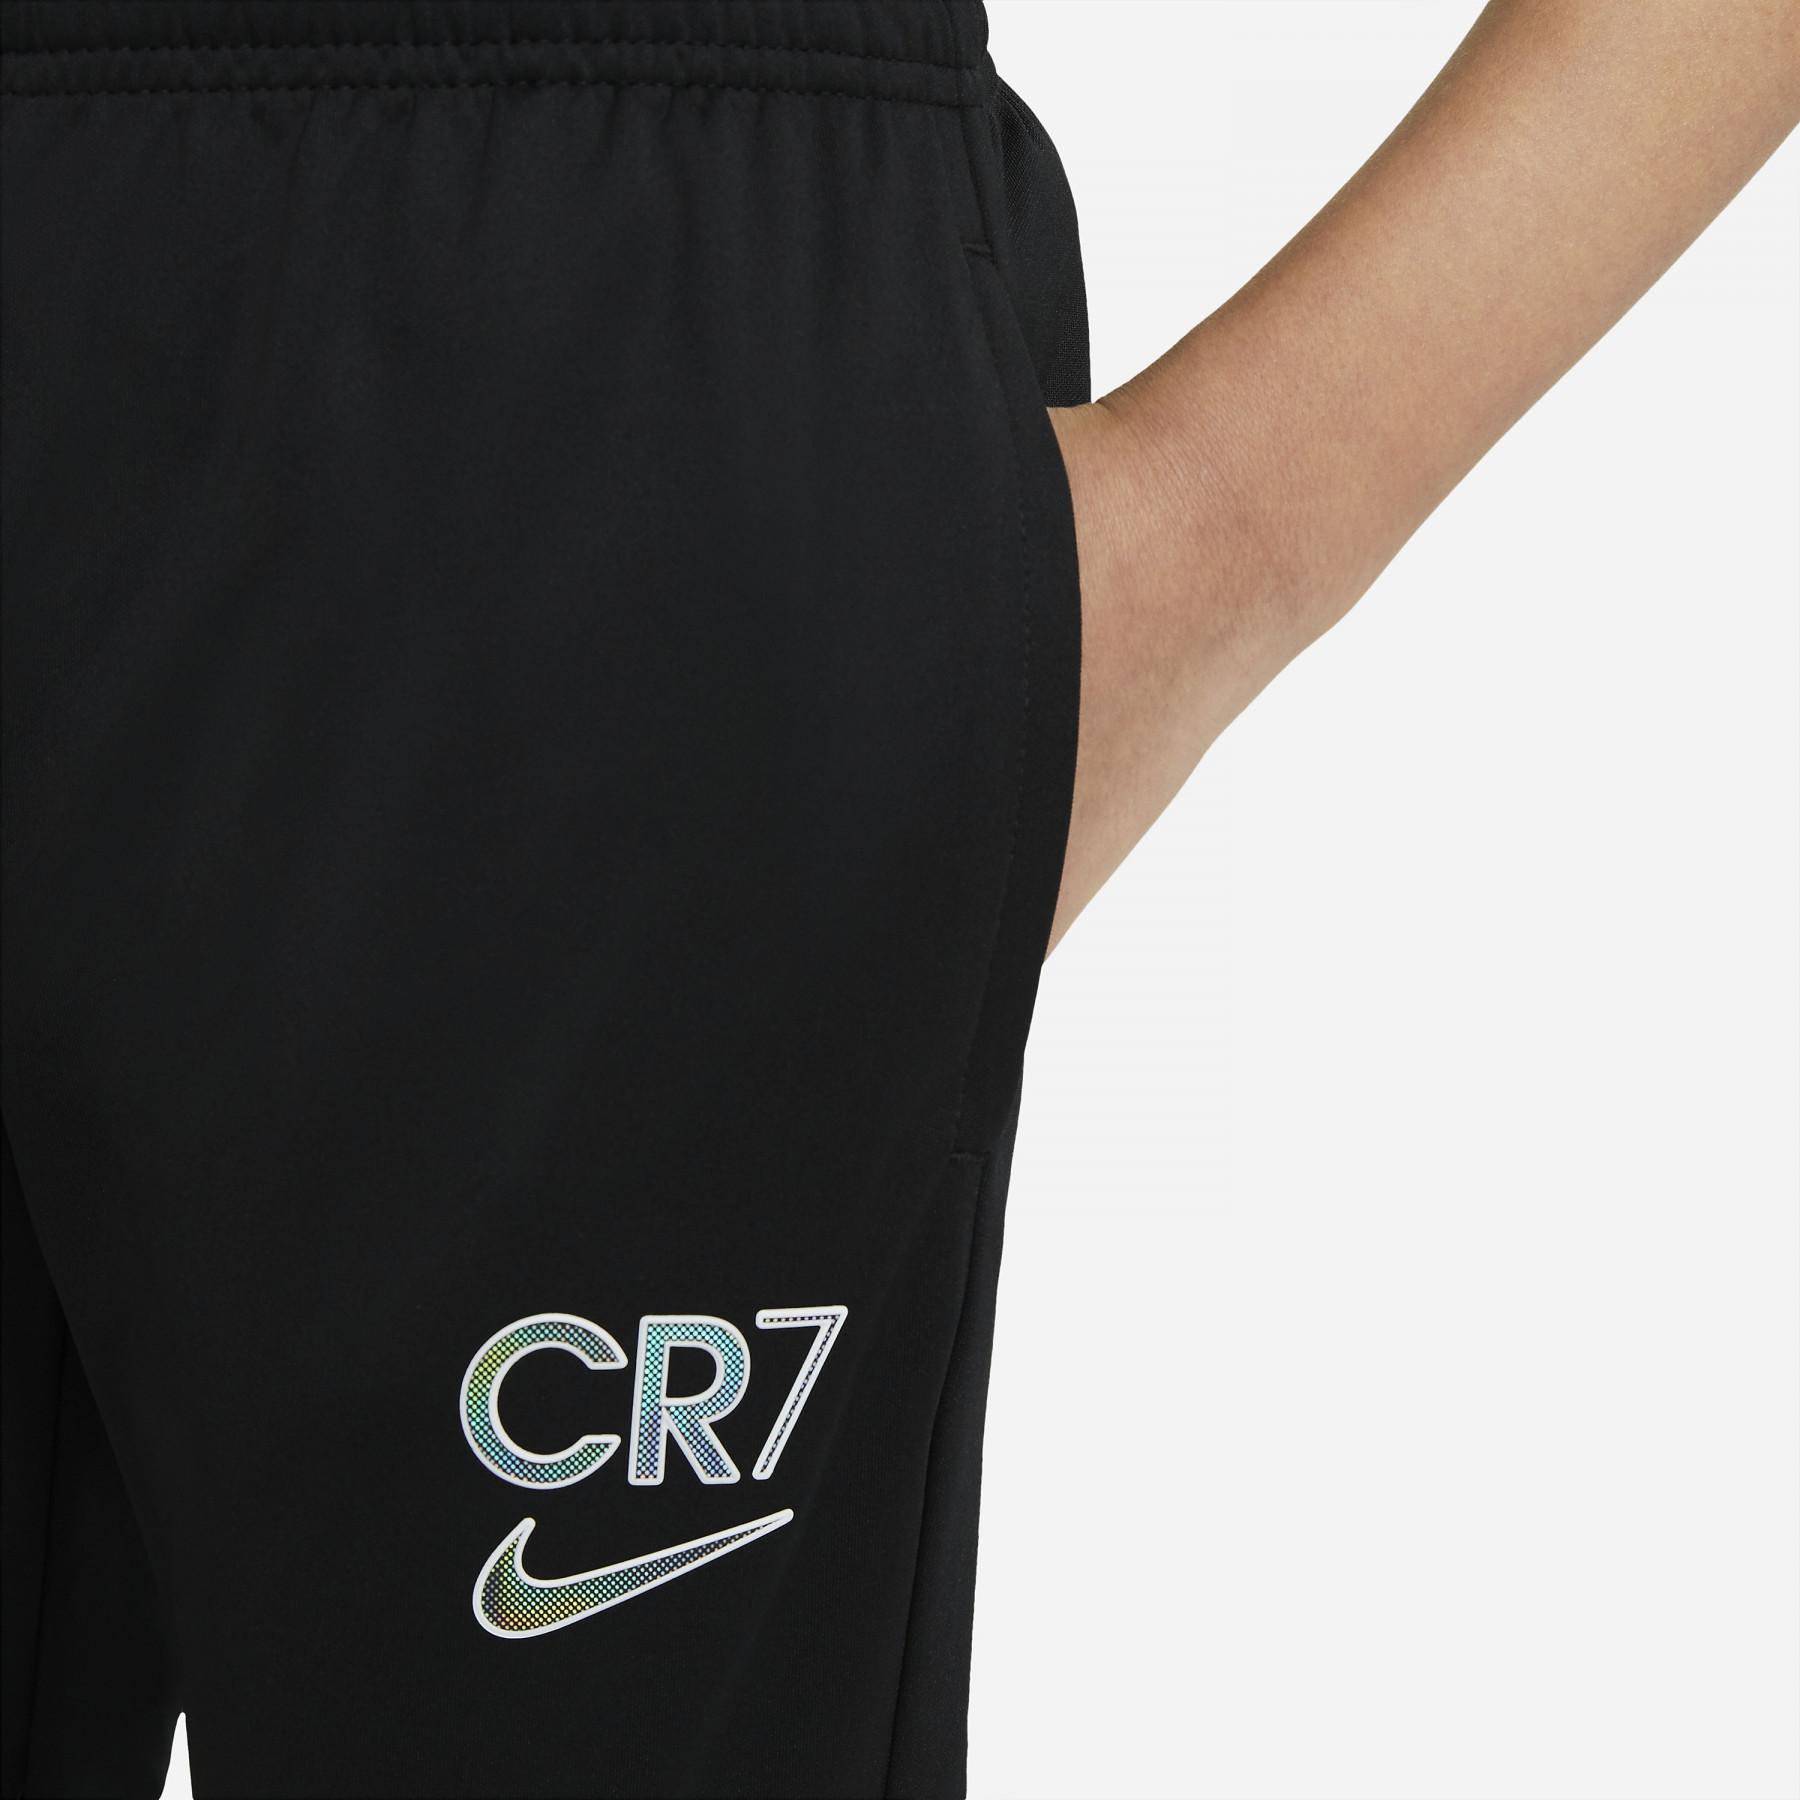 Kinderhosen Nike Dri-FIT CR7